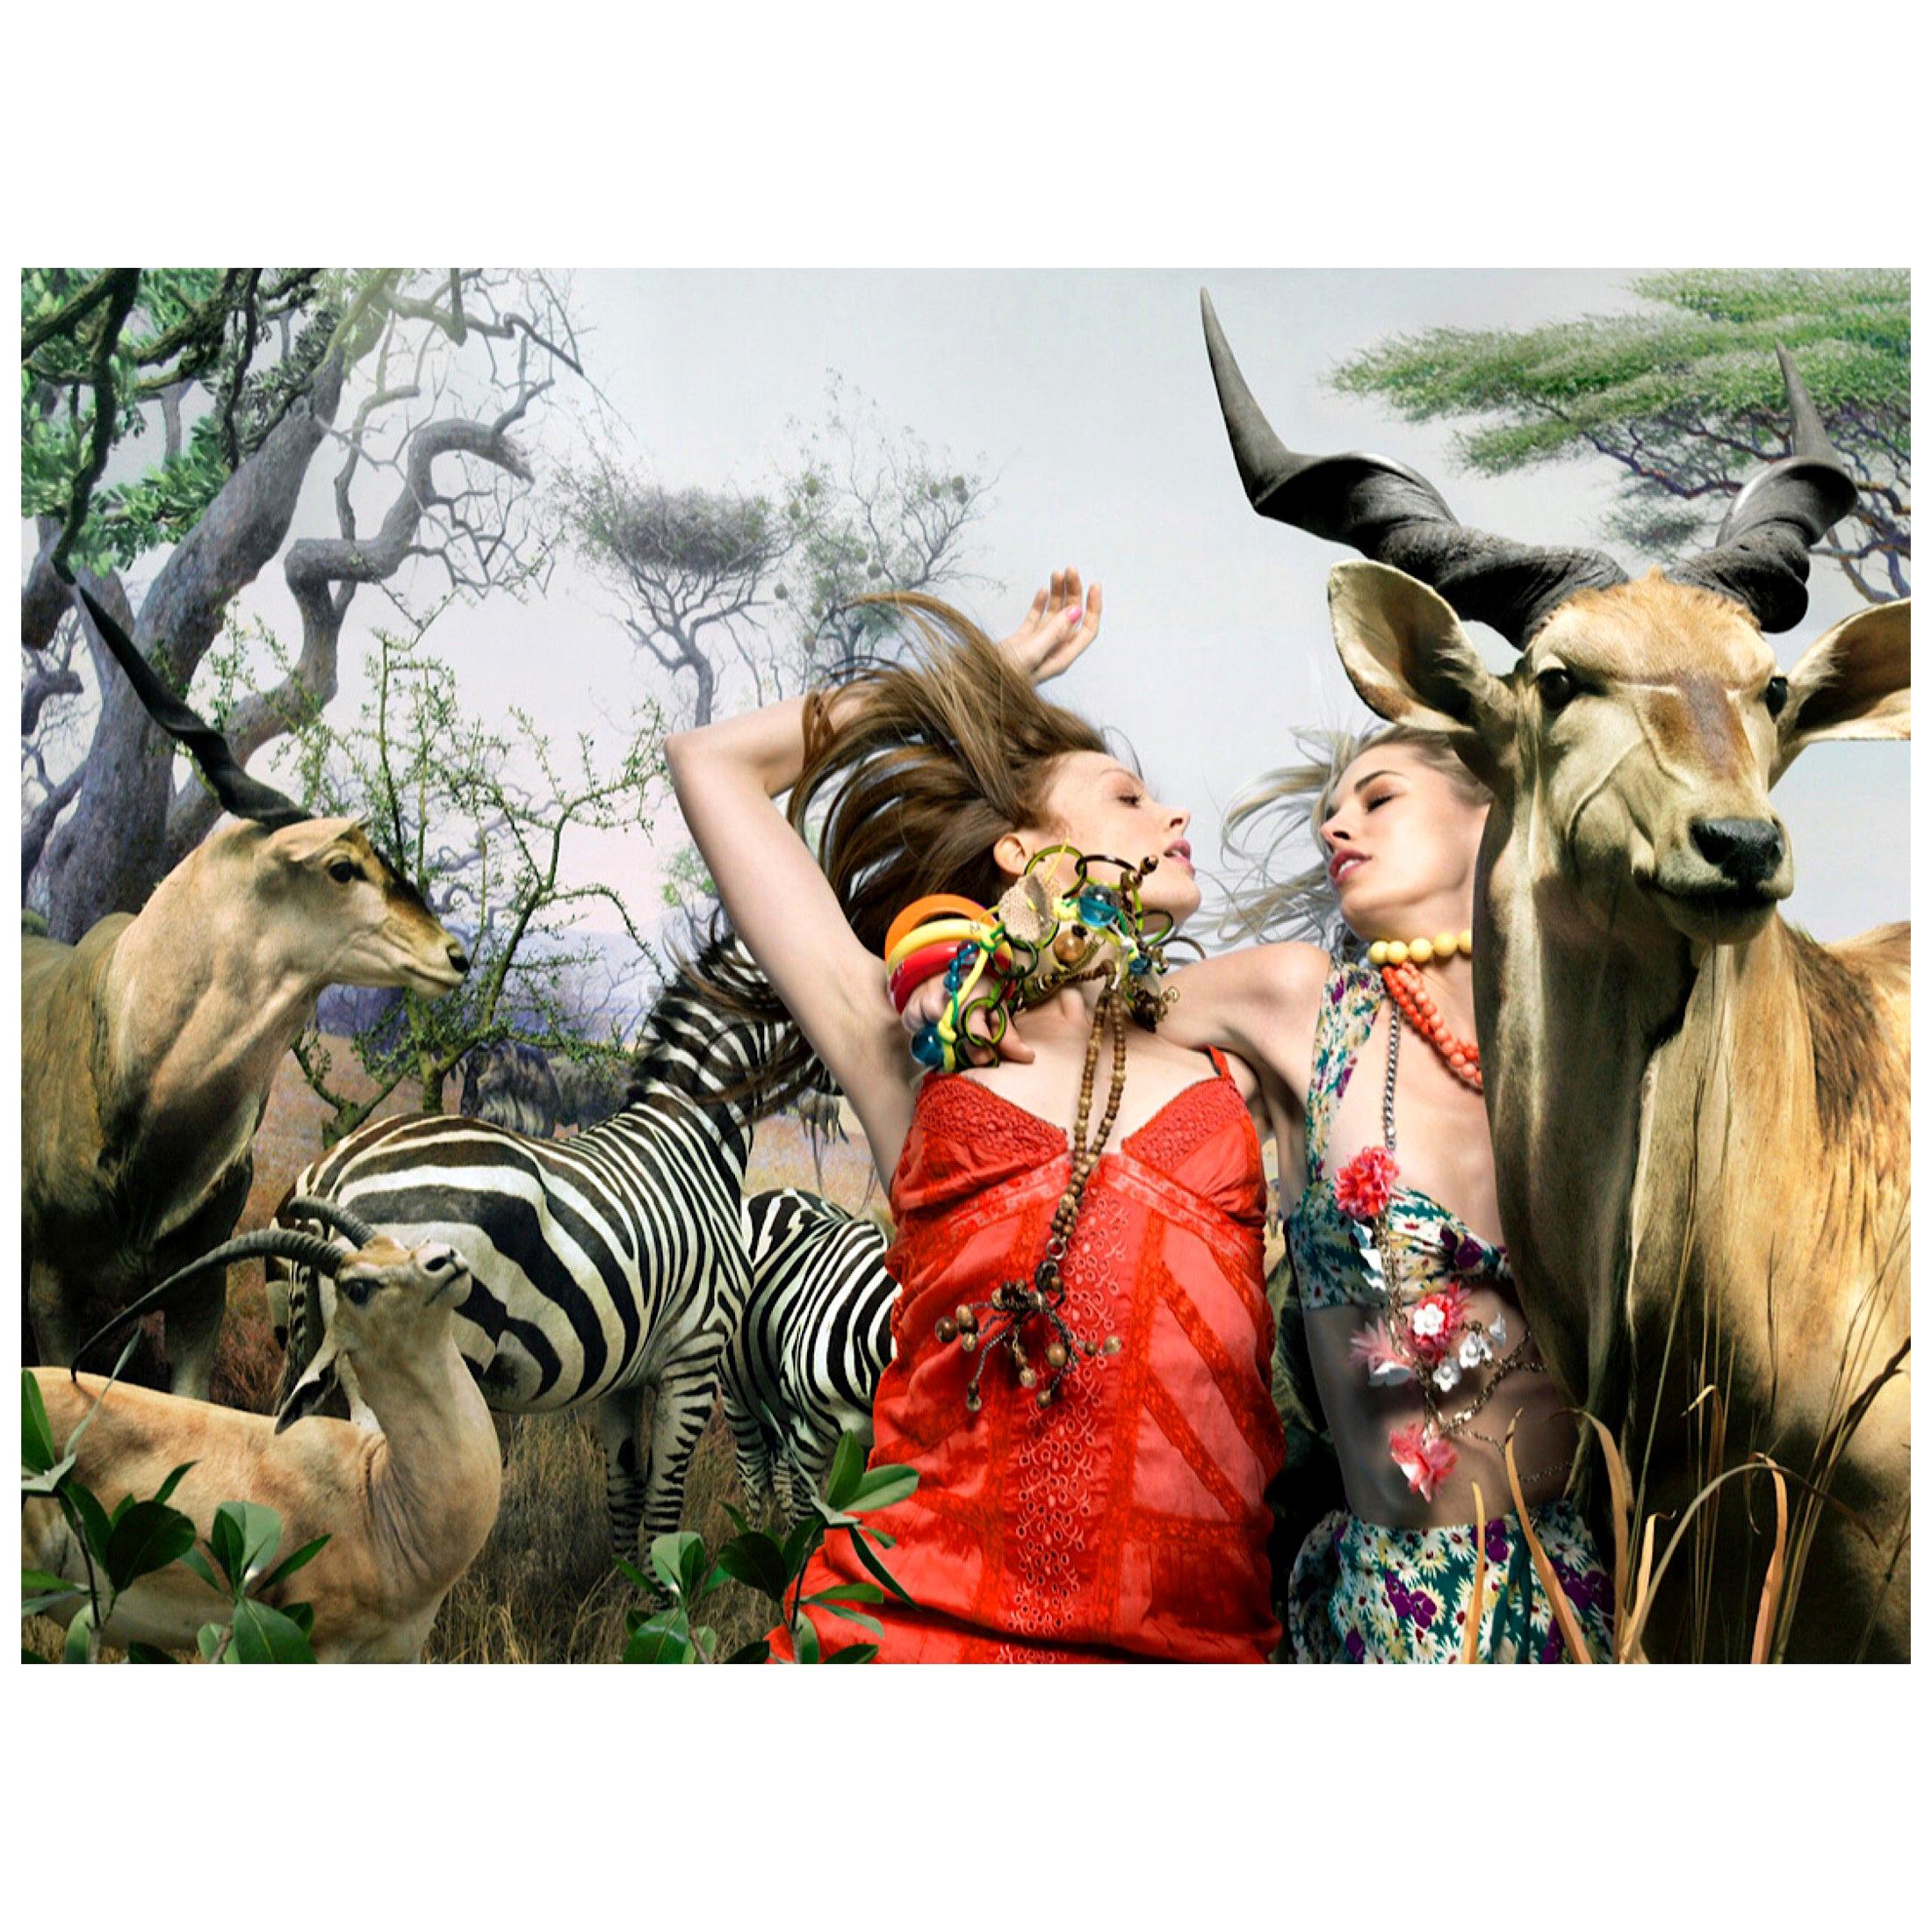 Photographie Safari Fashion de Nicola Majocchi, 2001